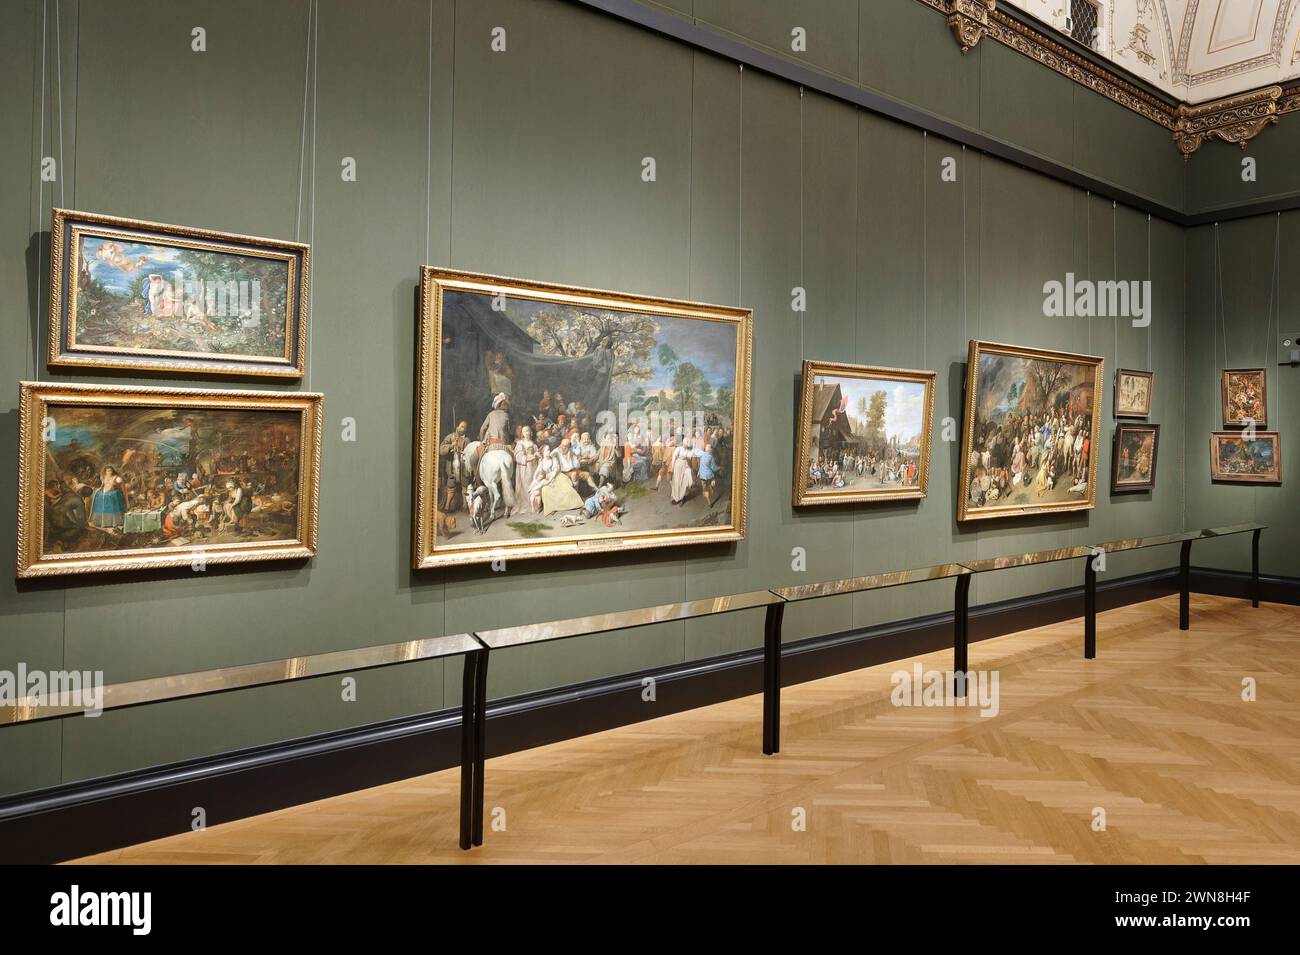 Vienne, Autriche. La galerie de photos du Musée d'histoire de l'art de Vienne (KHM) Banque D'Images